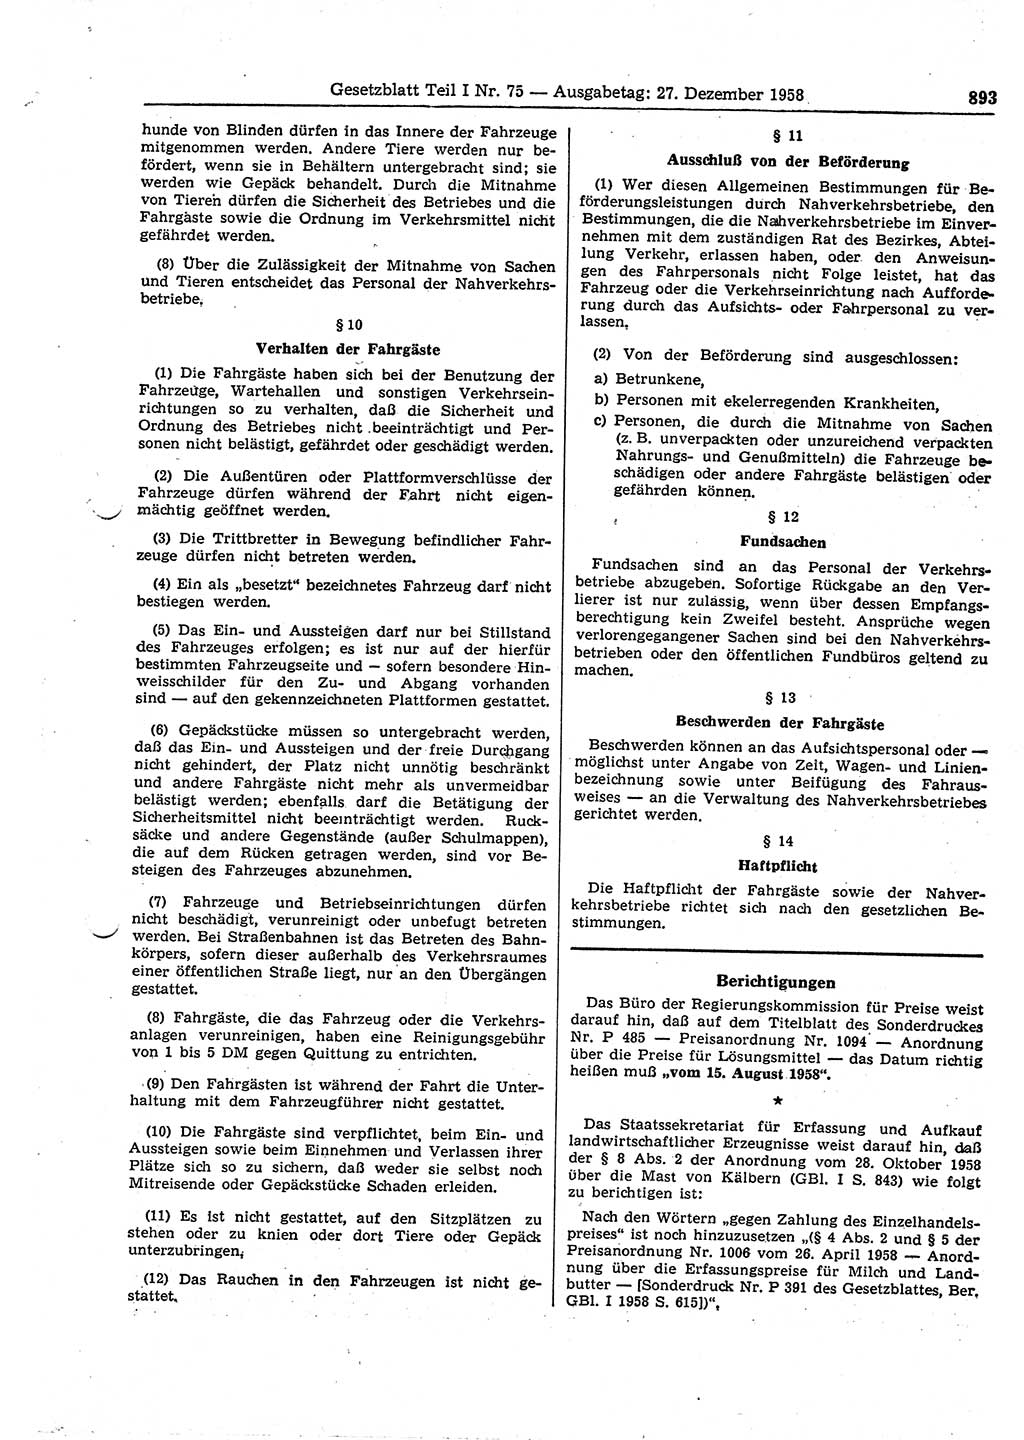 Gesetzblatt (GBl.) der Deutschen Demokratischen Republik (DDR) Teil Ⅰ 1958, Seite 893 (GBl. DDR Ⅰ 1958, S. 893)